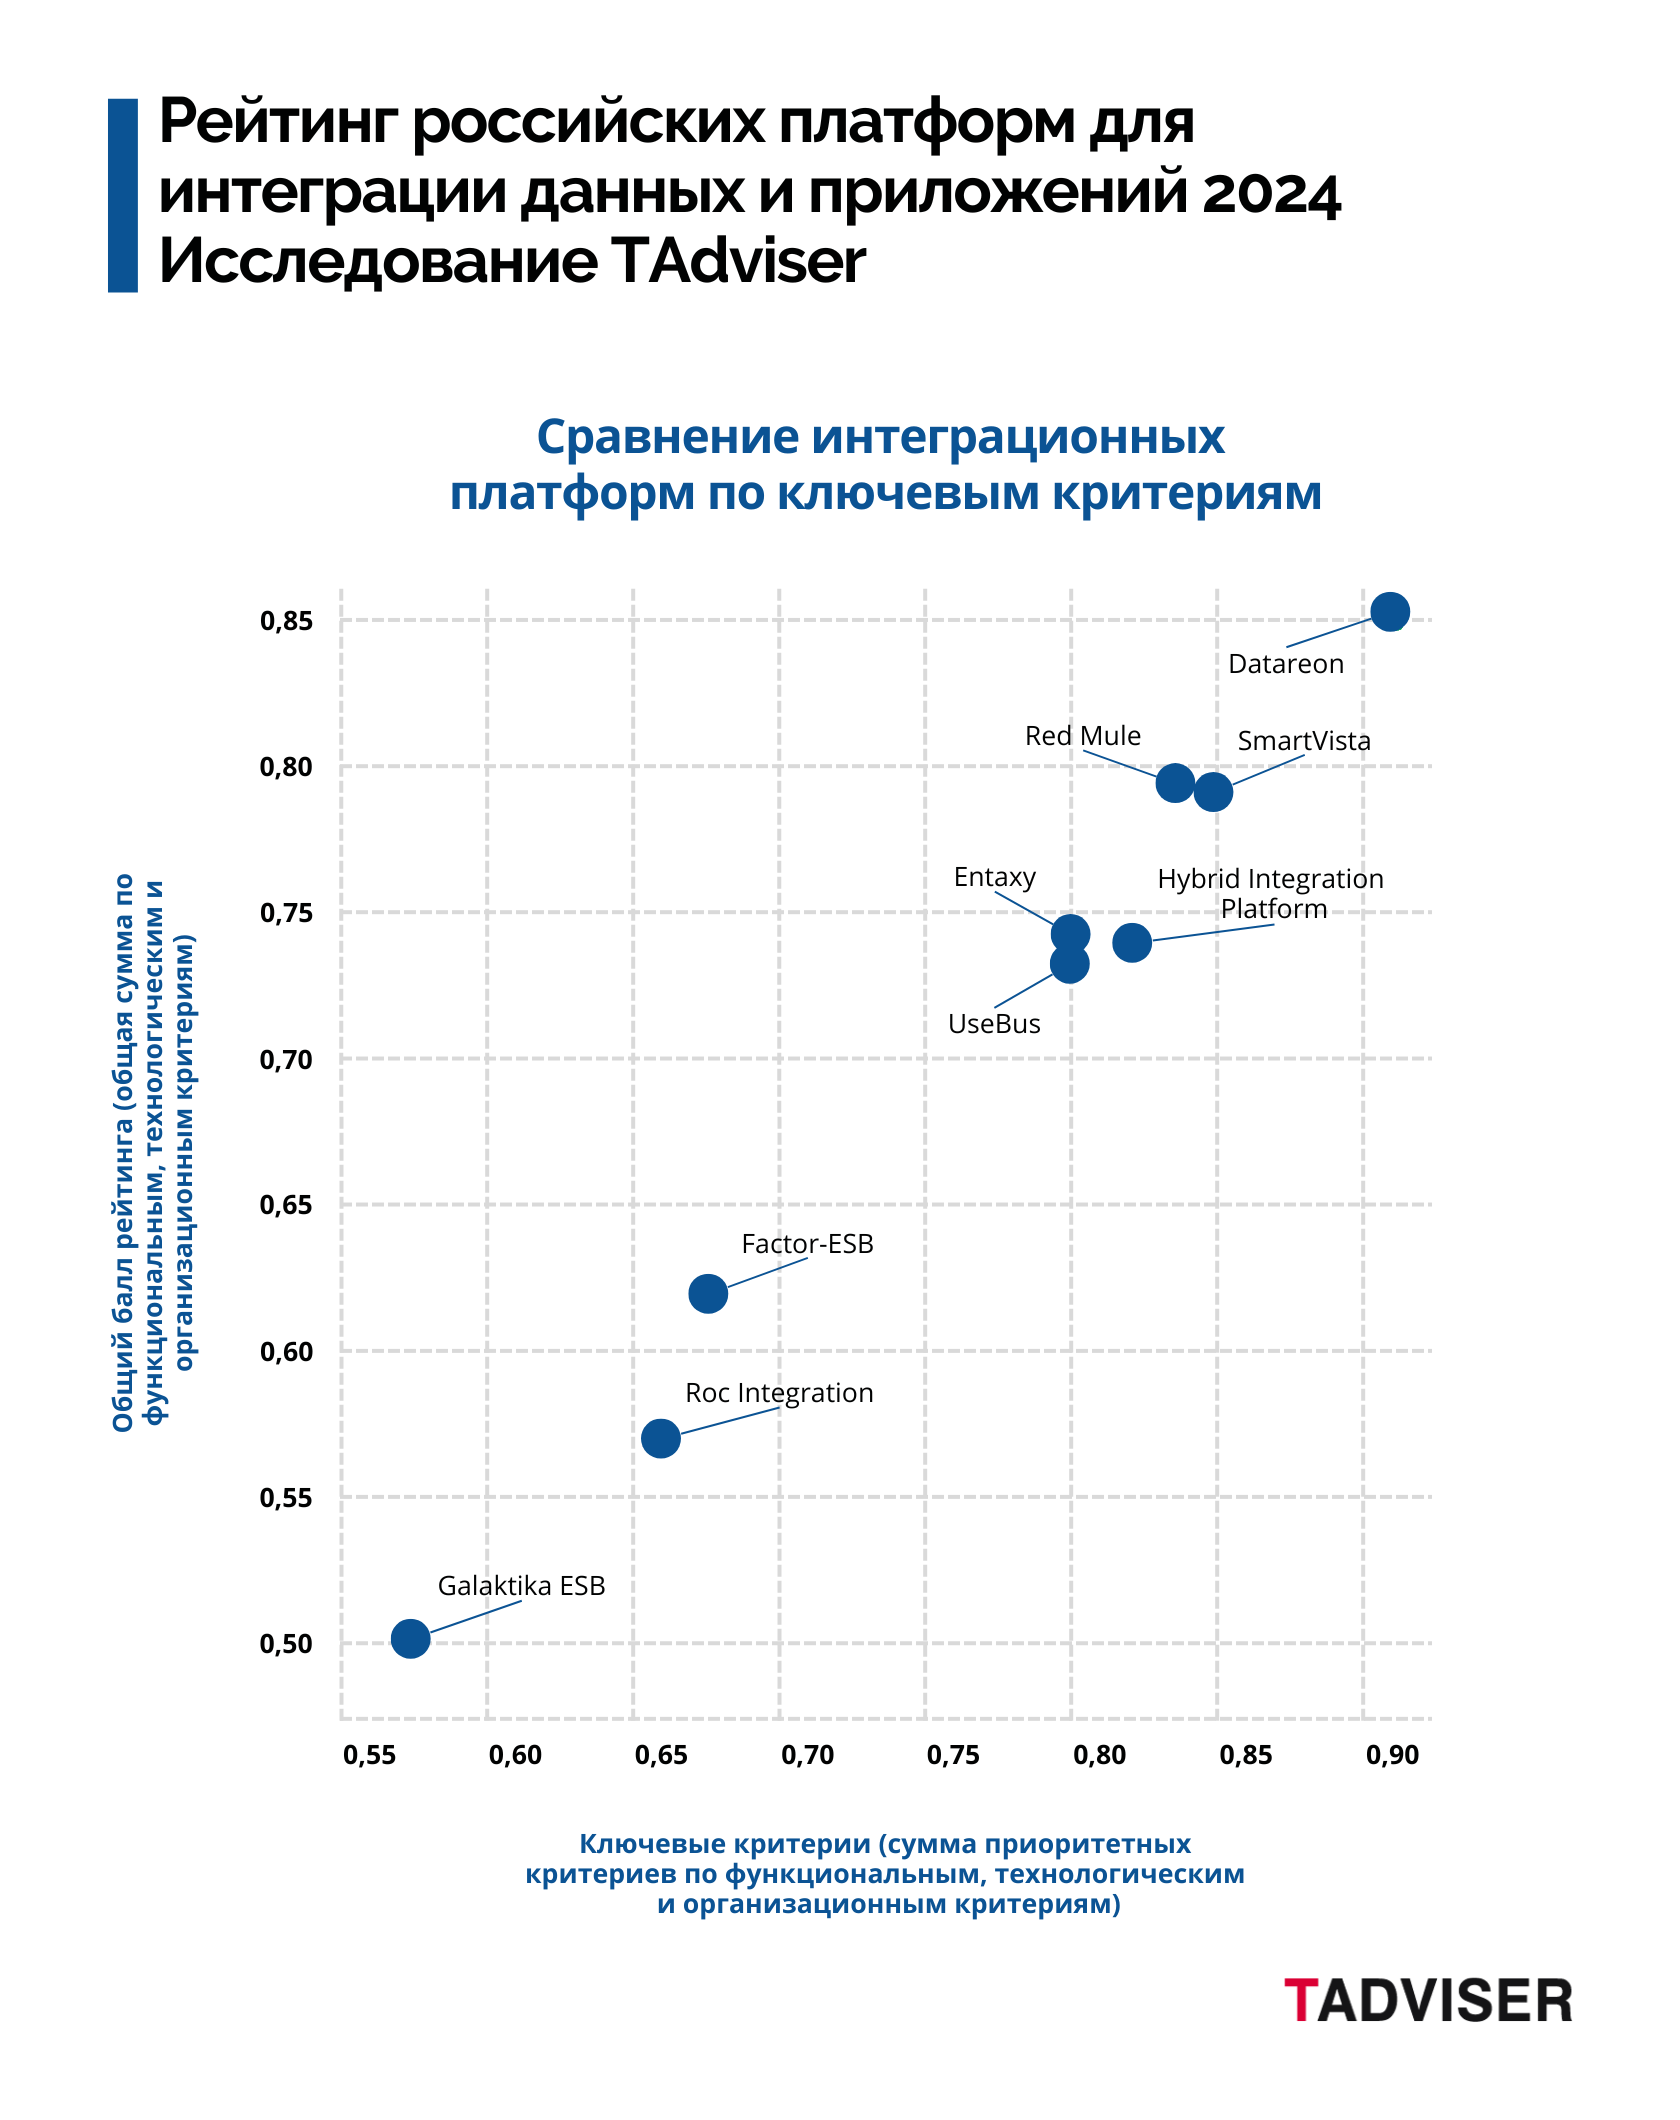 Вышел рейтинг TAdviser российских платформ для интеграции приложений